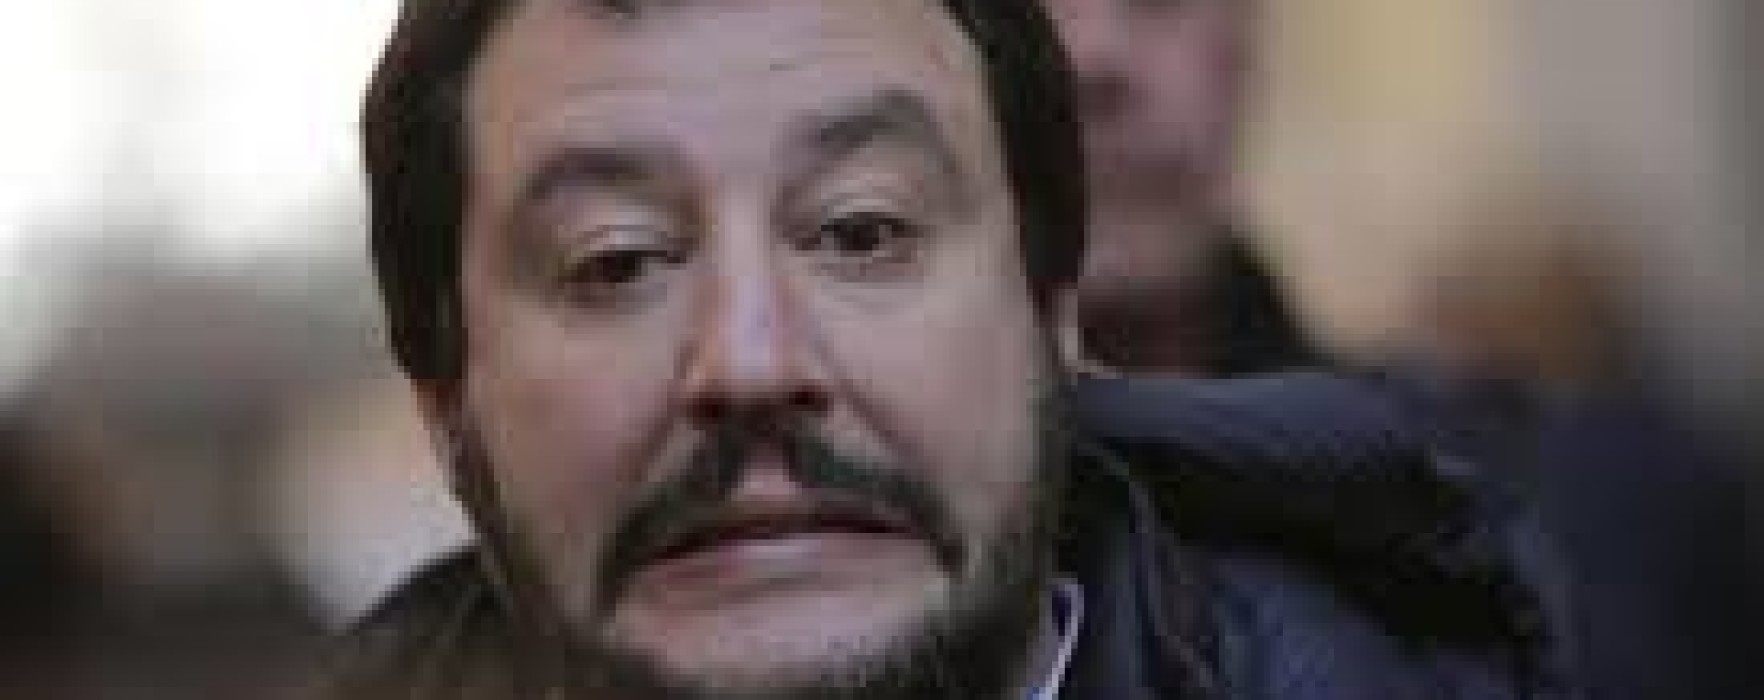 Salvini il padrone con il guinzaglio